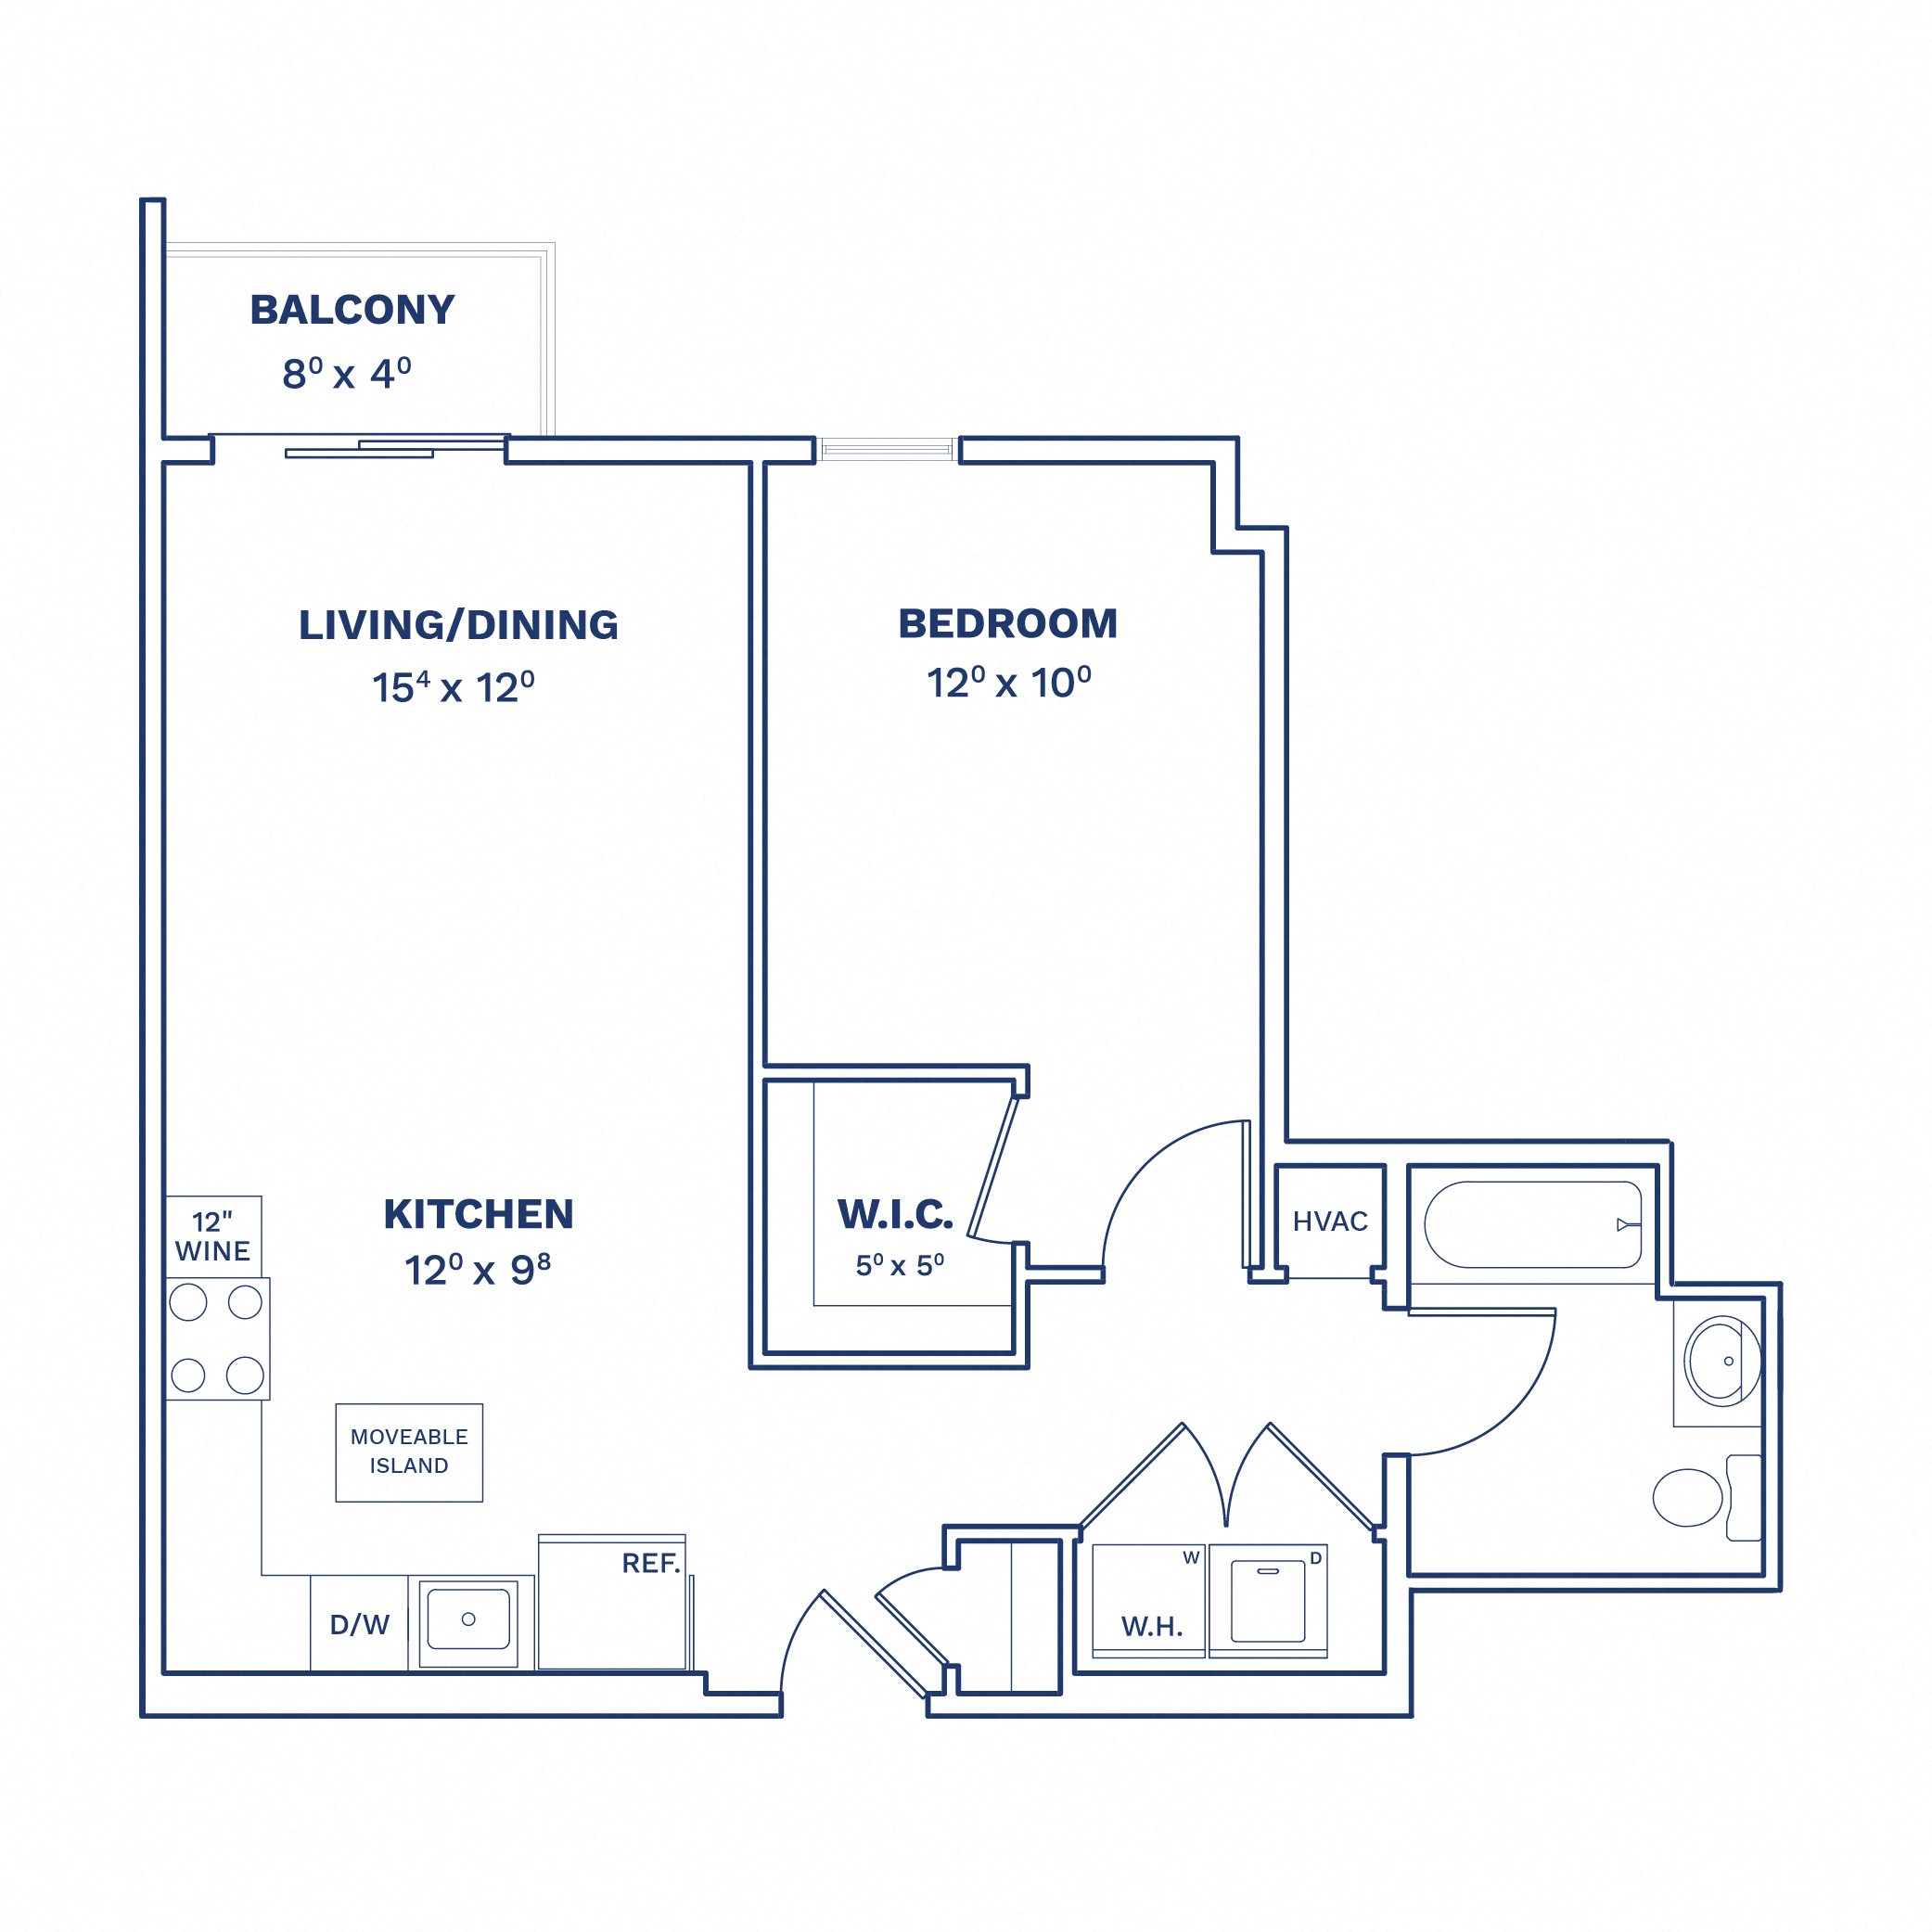 Floorplan of Unit 1 Bed/1 Bath-A1